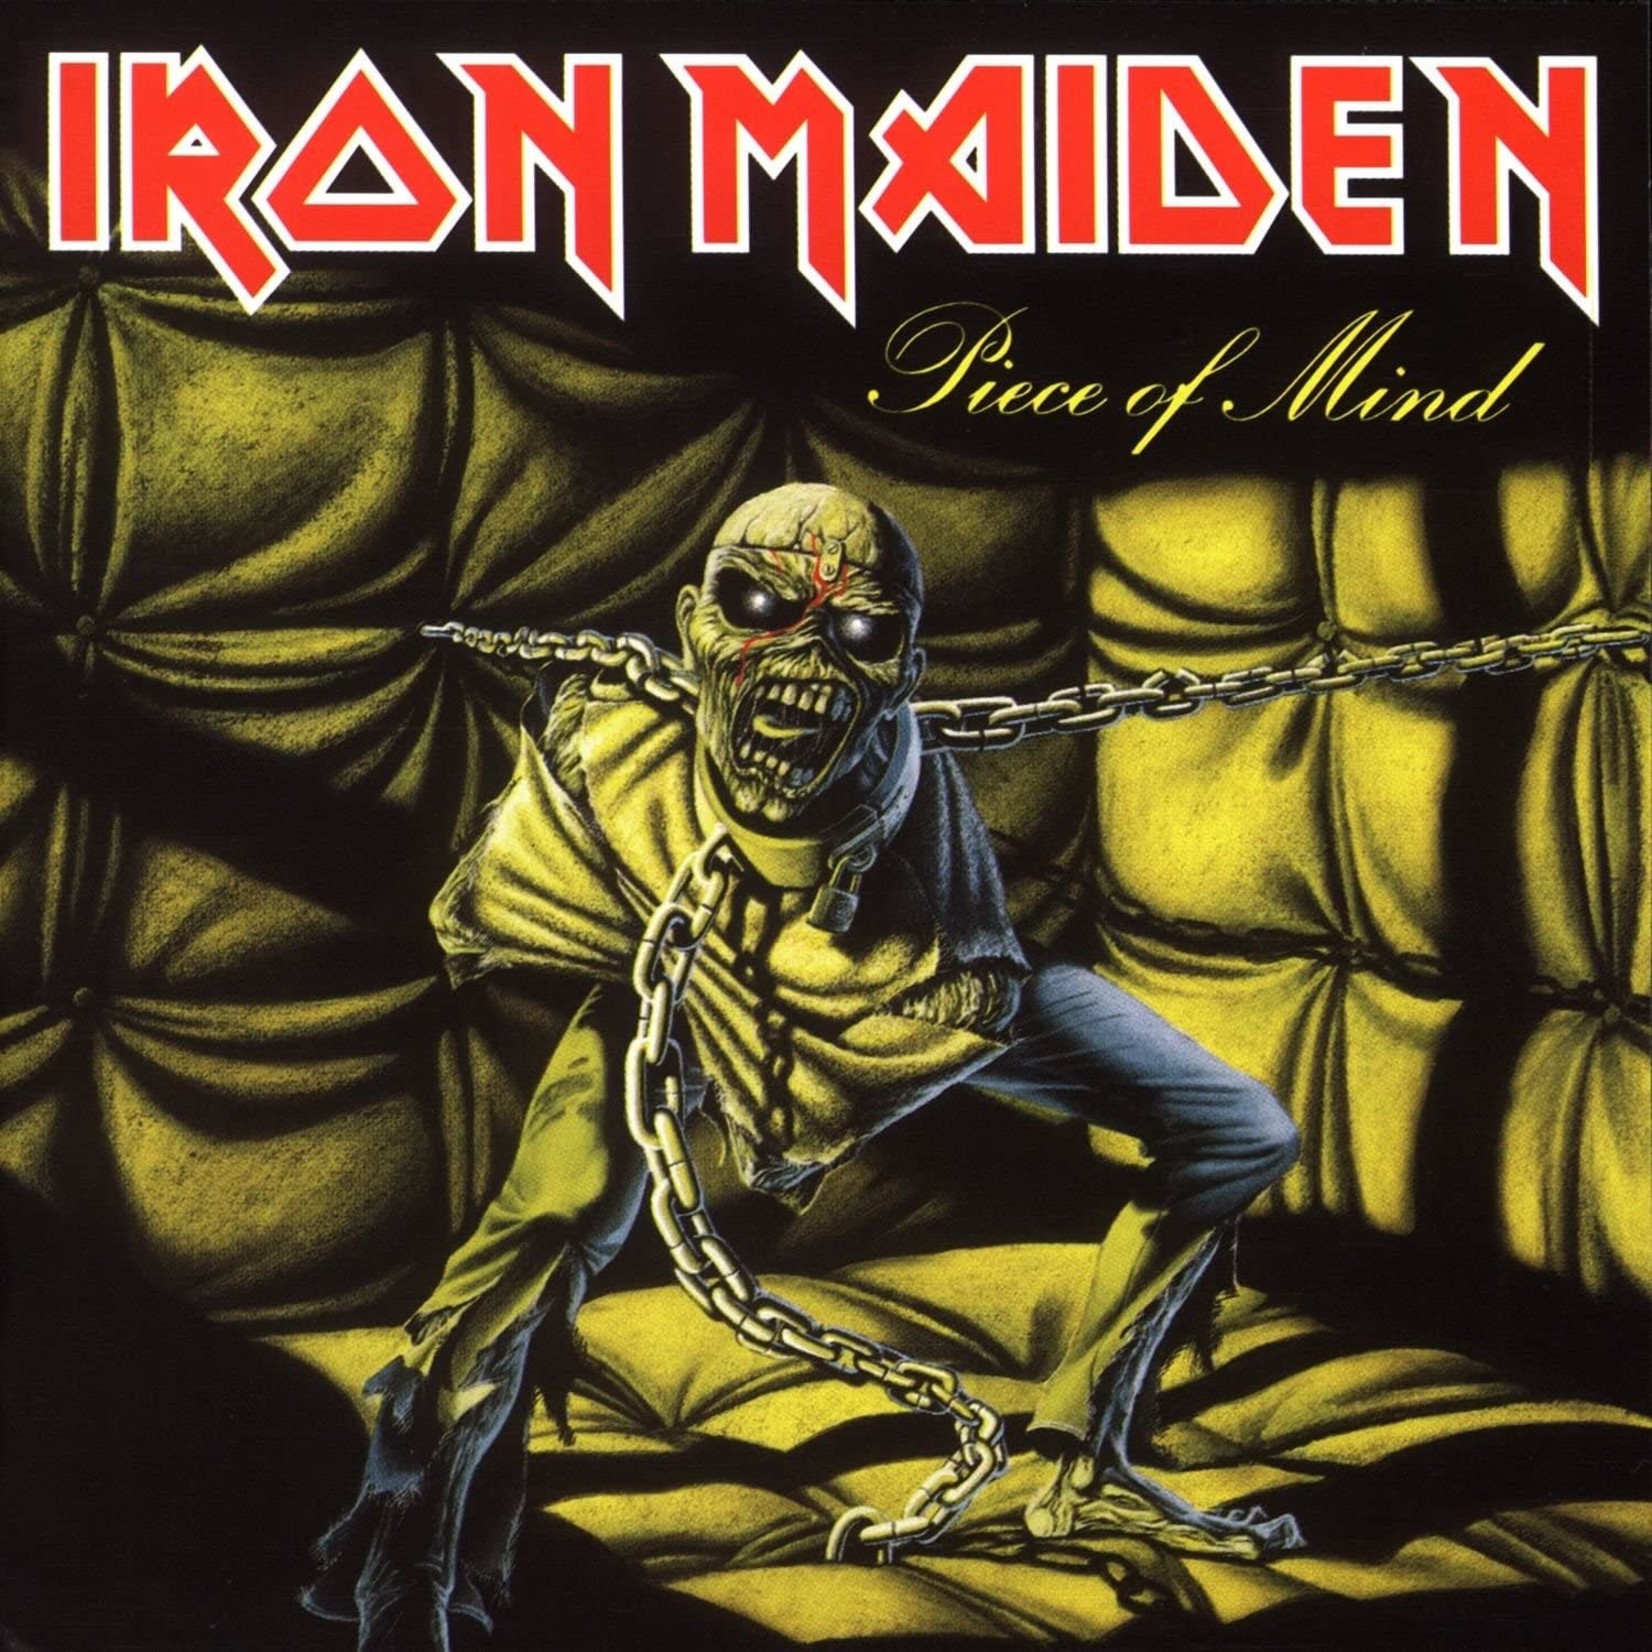 Iron Maiden Iron Maiden - Piece of Mind